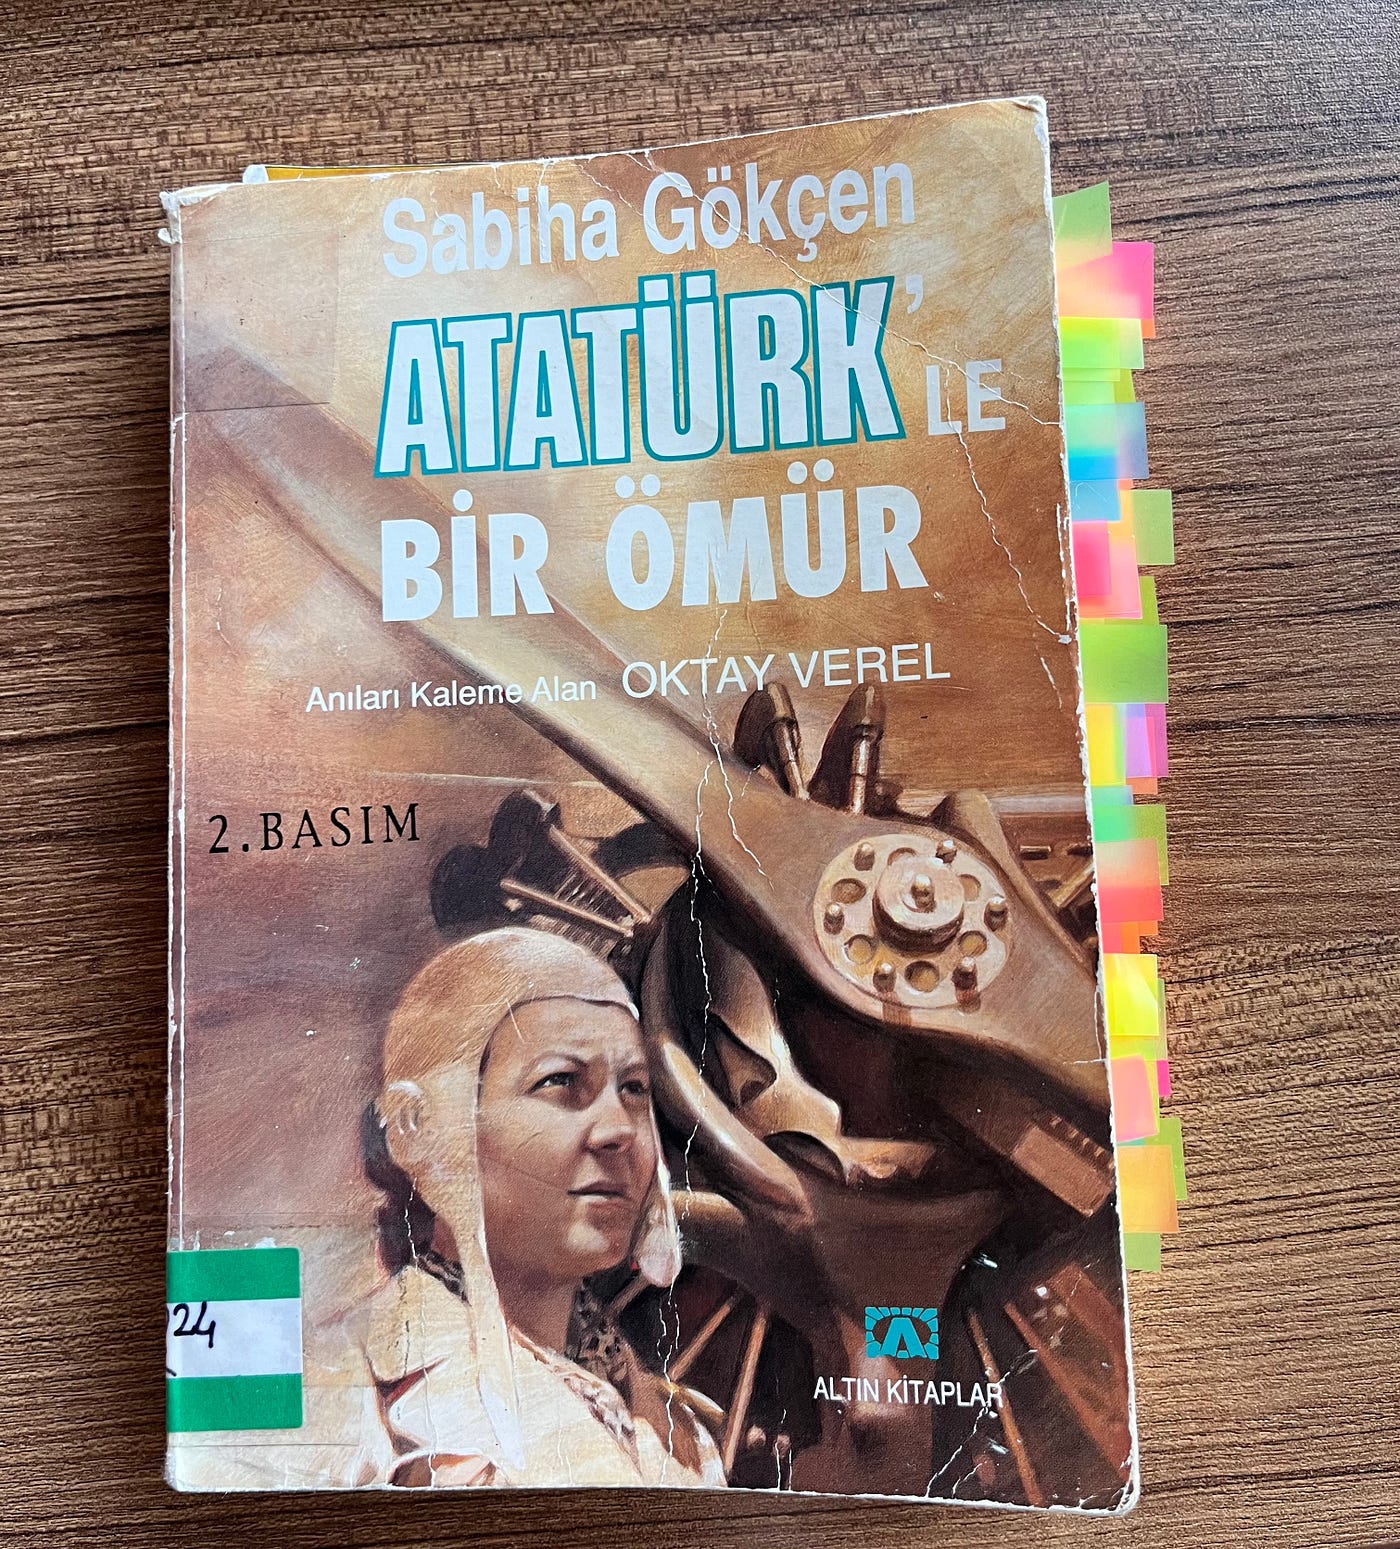 Atatürk'le Bir Ömür | by Aybüke | Medium